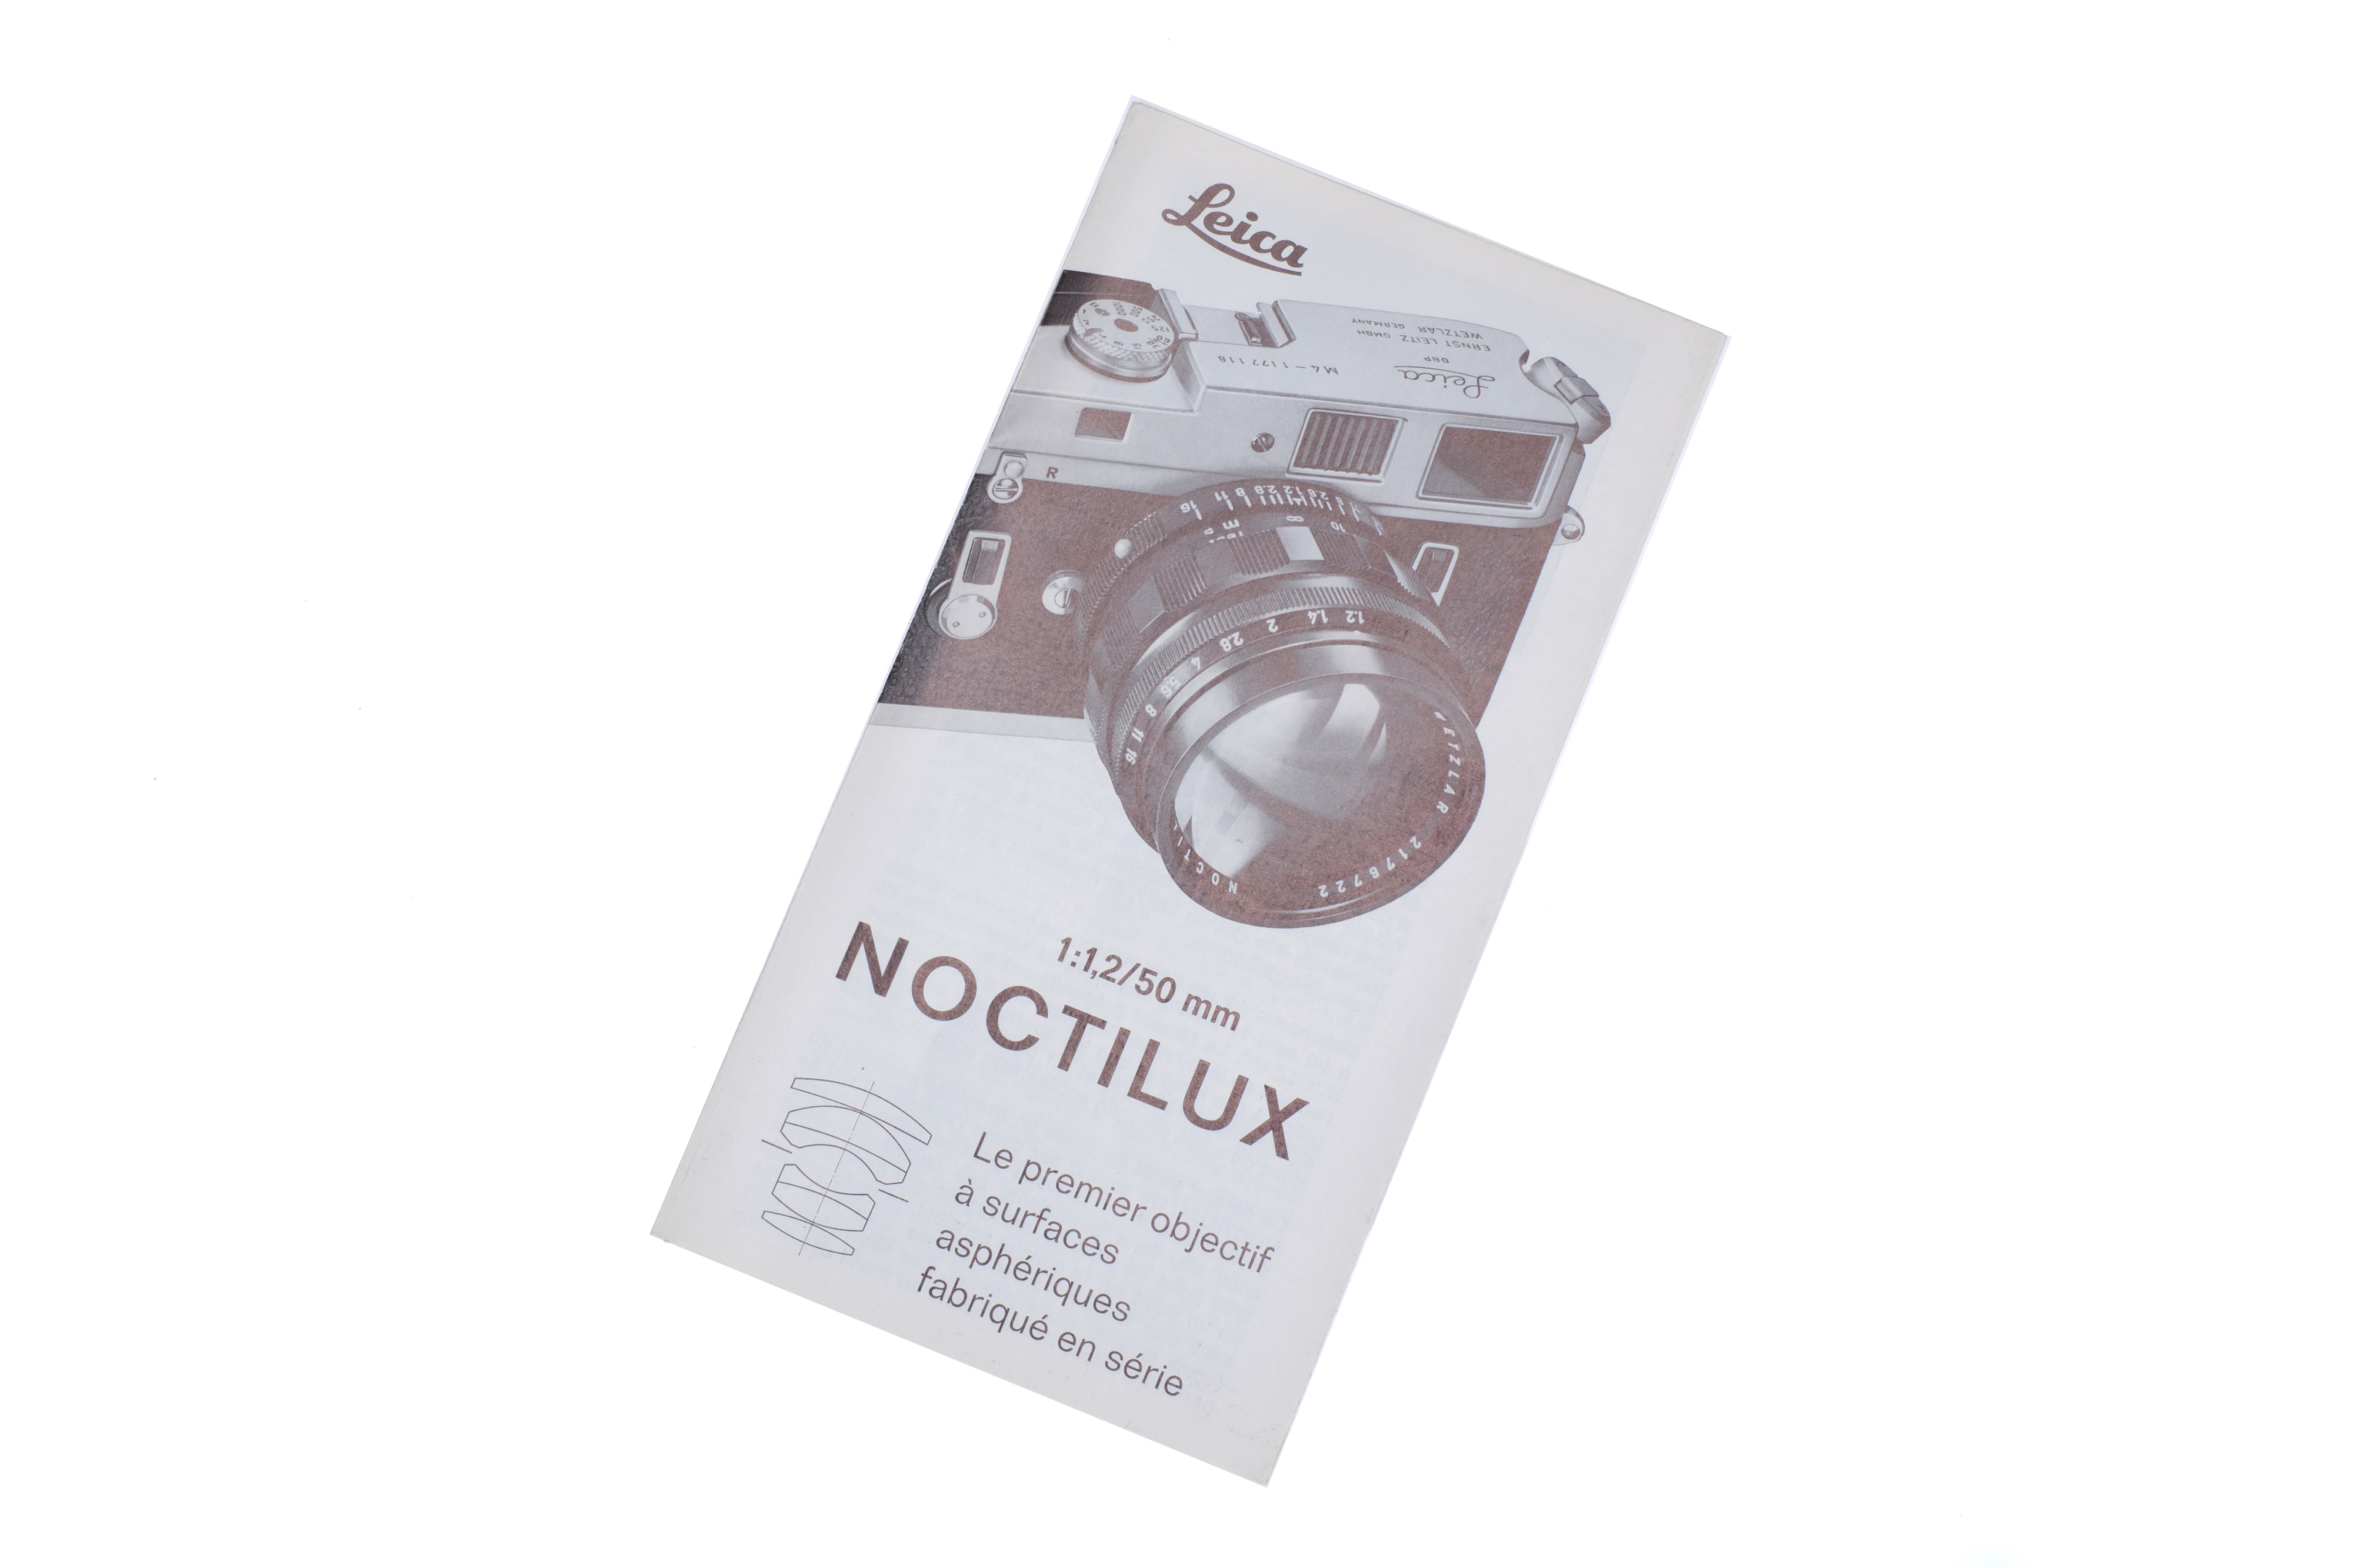 A Leitz Noctilux f/1.2 50mm Lens Brochure,